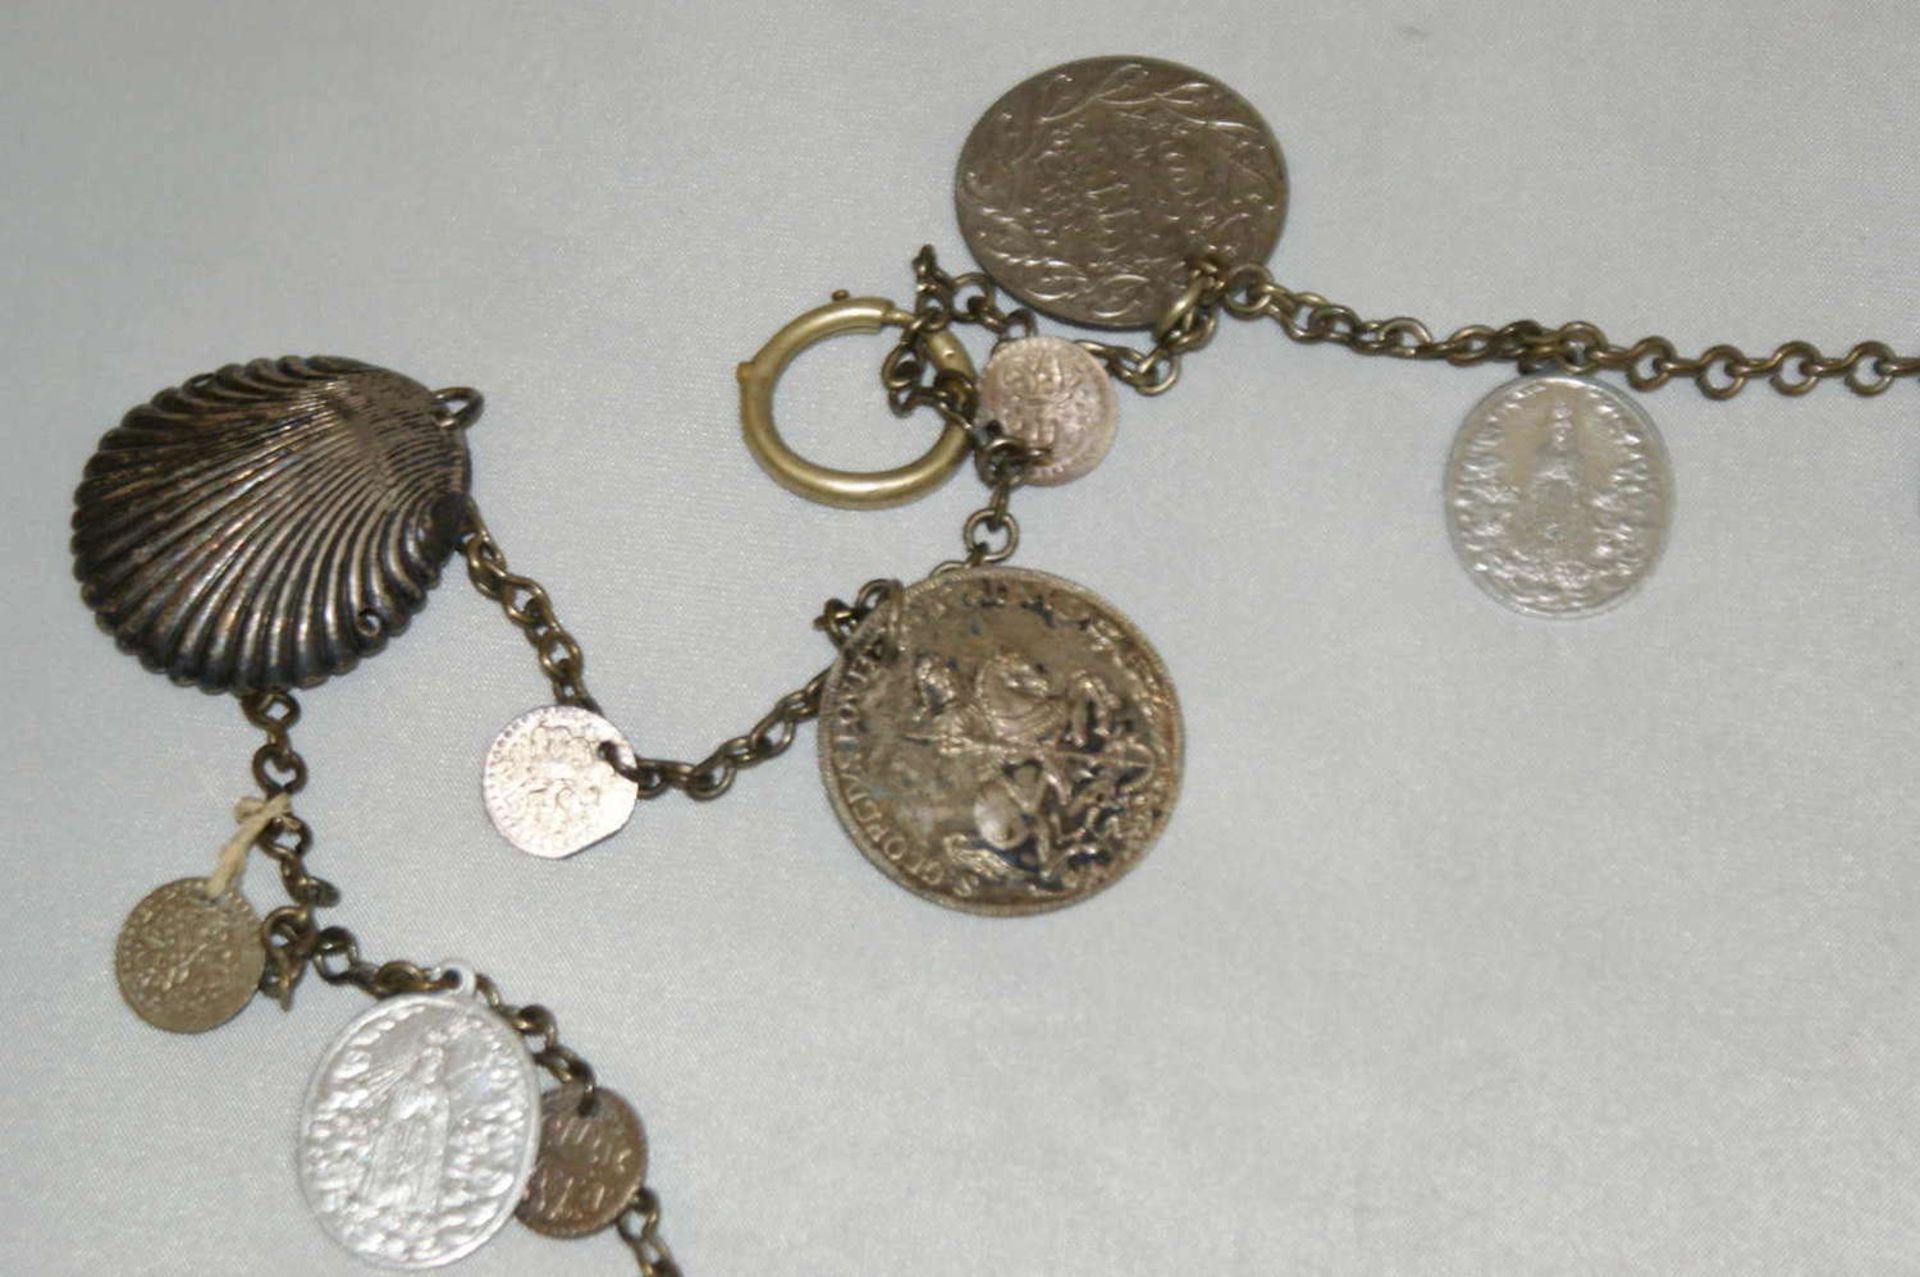 ausgefallene Uhrenkette mit Medaillion und kleine Münzen. Silberfarben. Bitte besichtigen. - Bild 2 aus 2